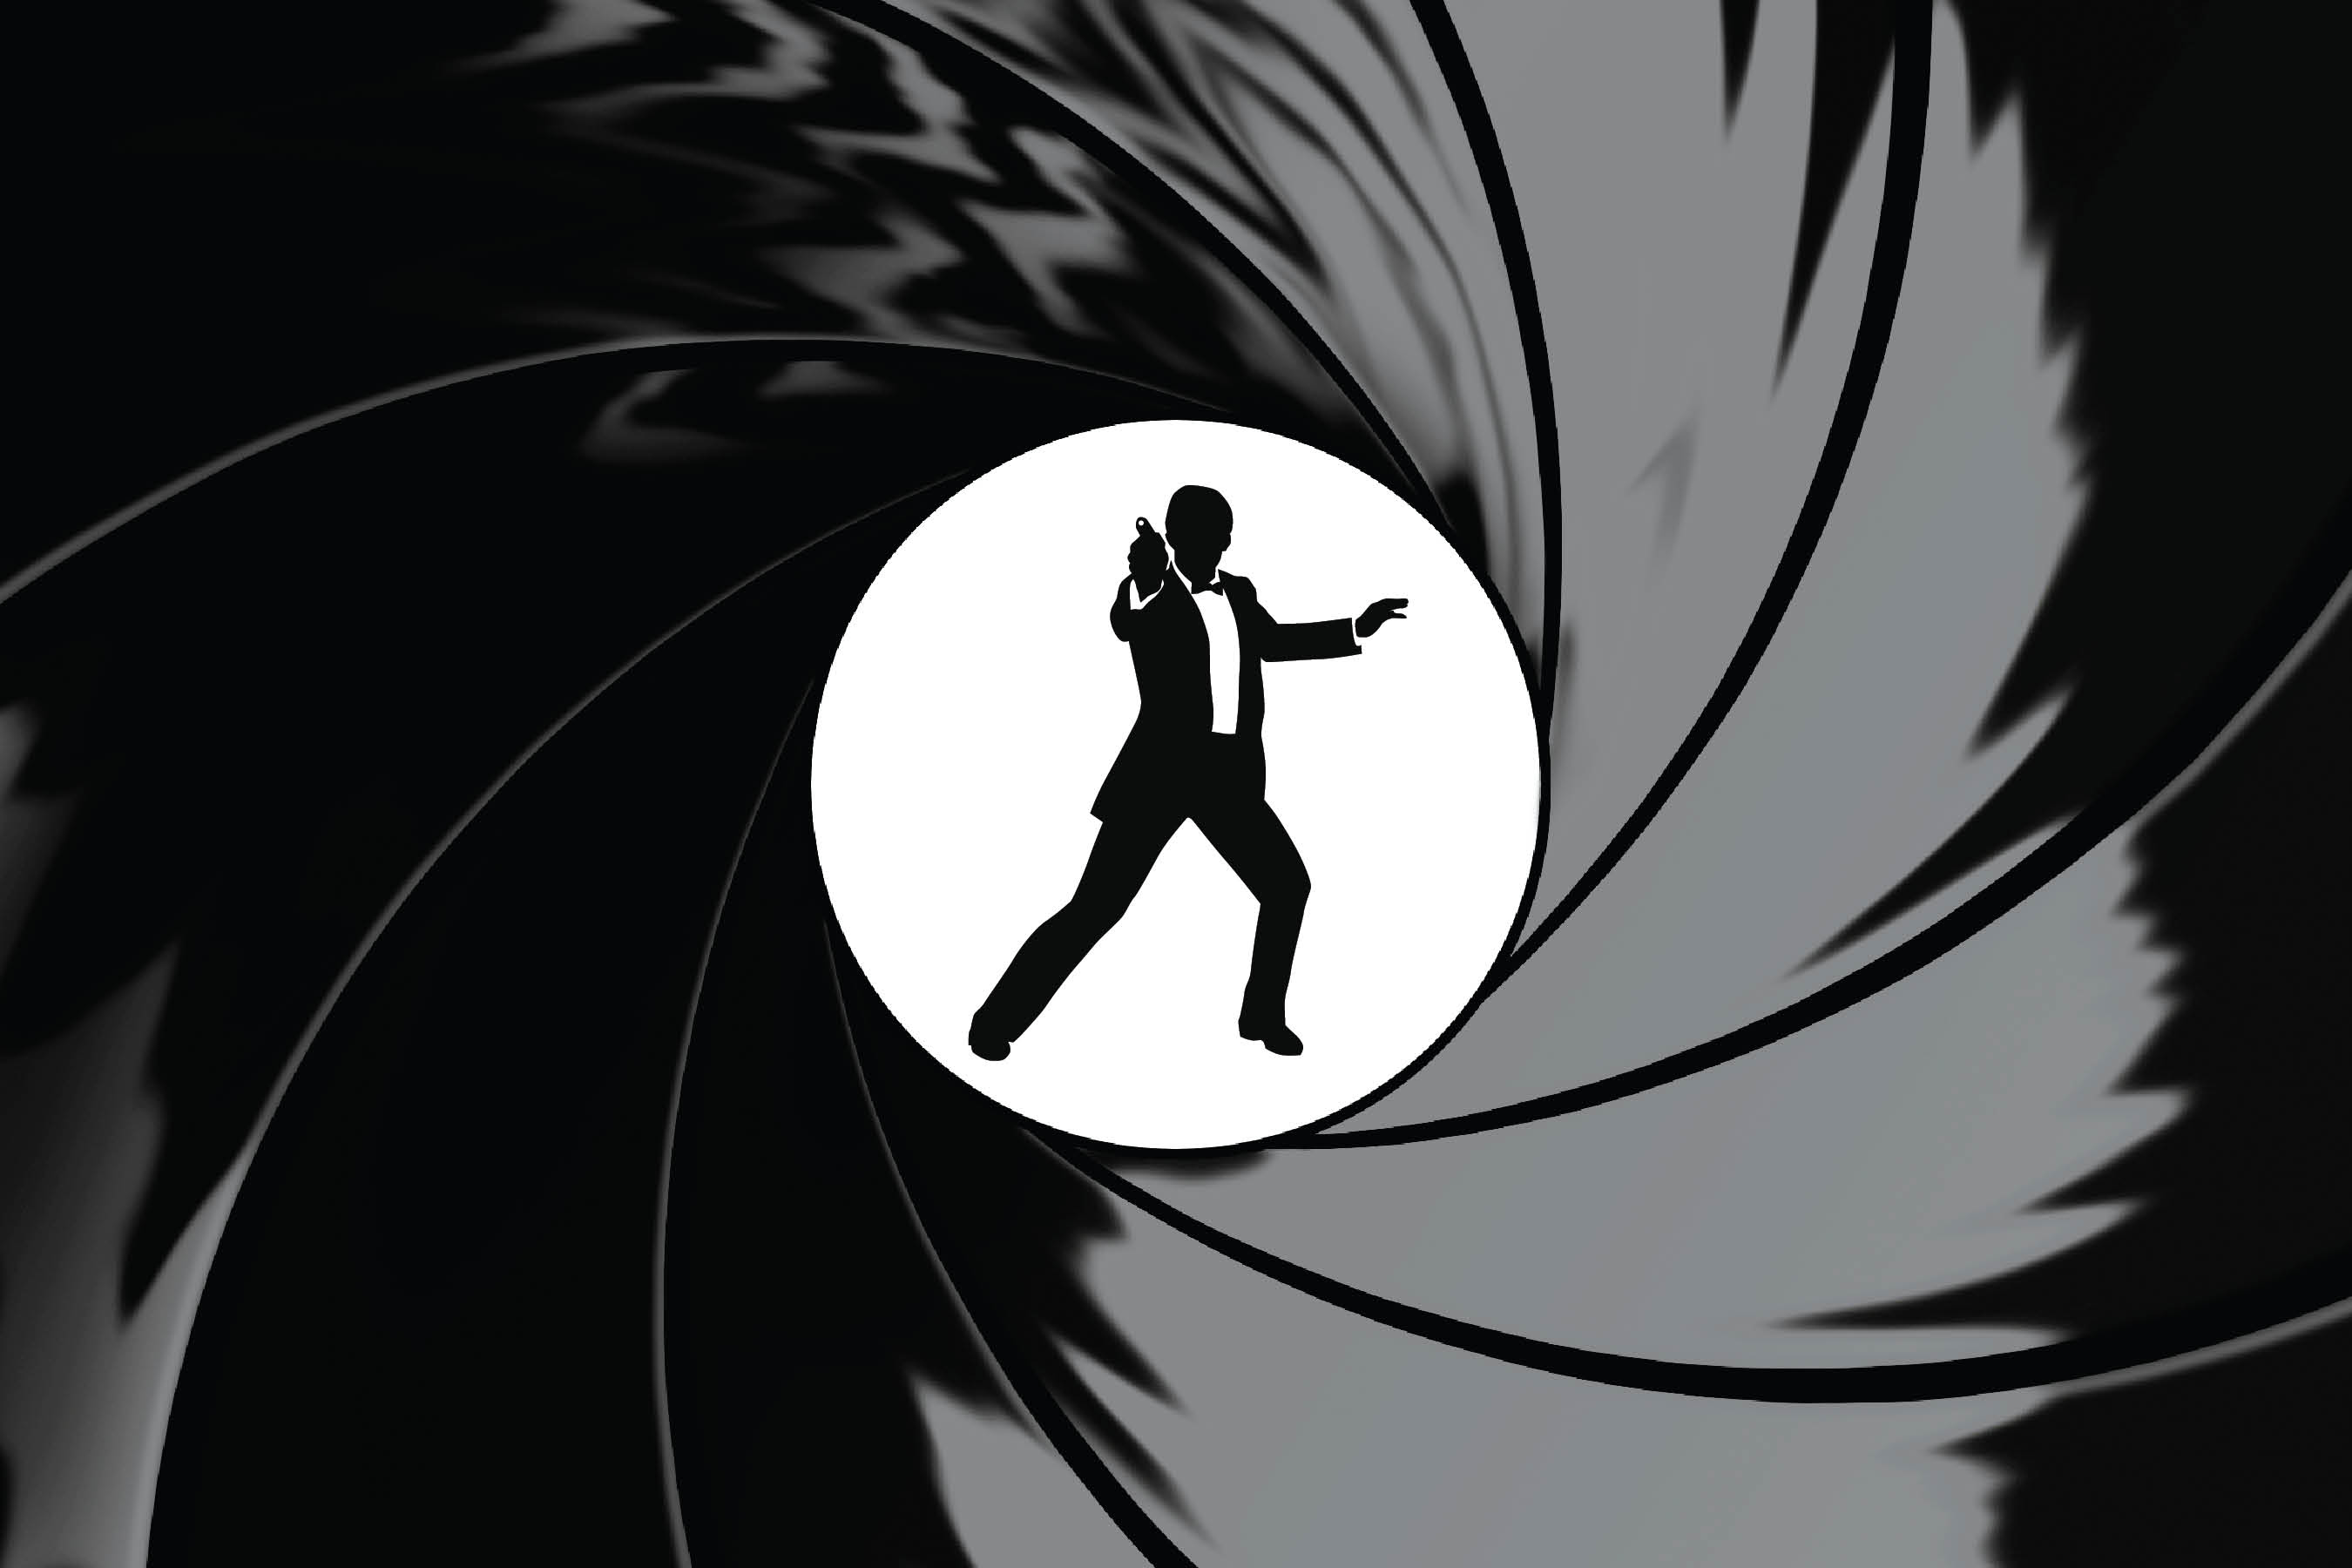 James Bond Wallpaper 8285 2700x1800 px ~ WallpaperFort.com